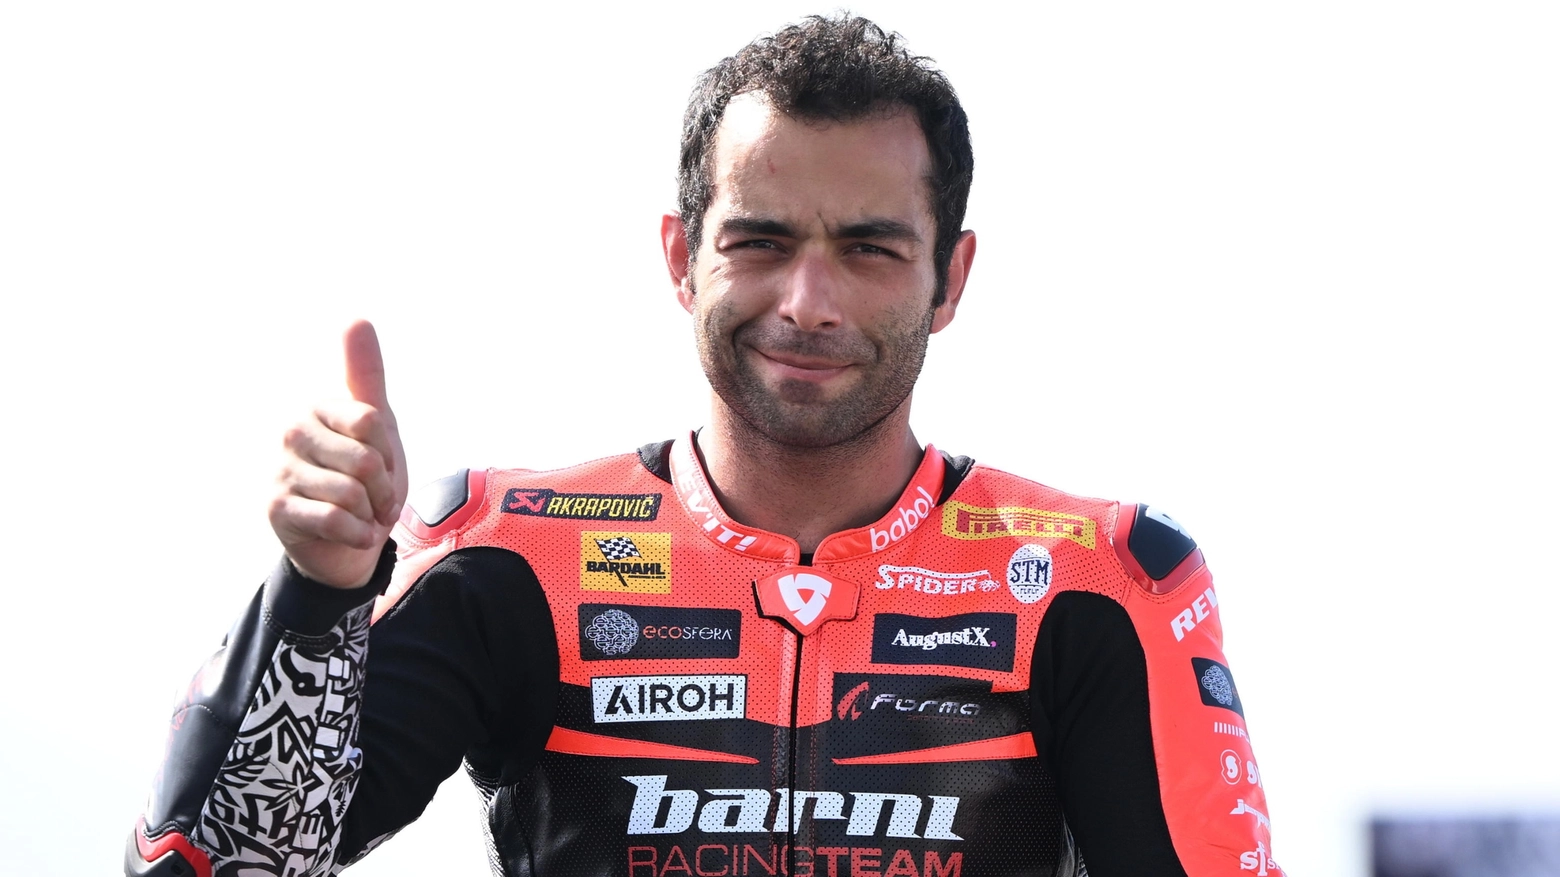 Il pilota italiano di Ducati è caduto in motocross e ha rischiato la vita, ora sta meglio e punta a tornare per il gran premio dell’Emilia Romagna a Misano di metà giugno